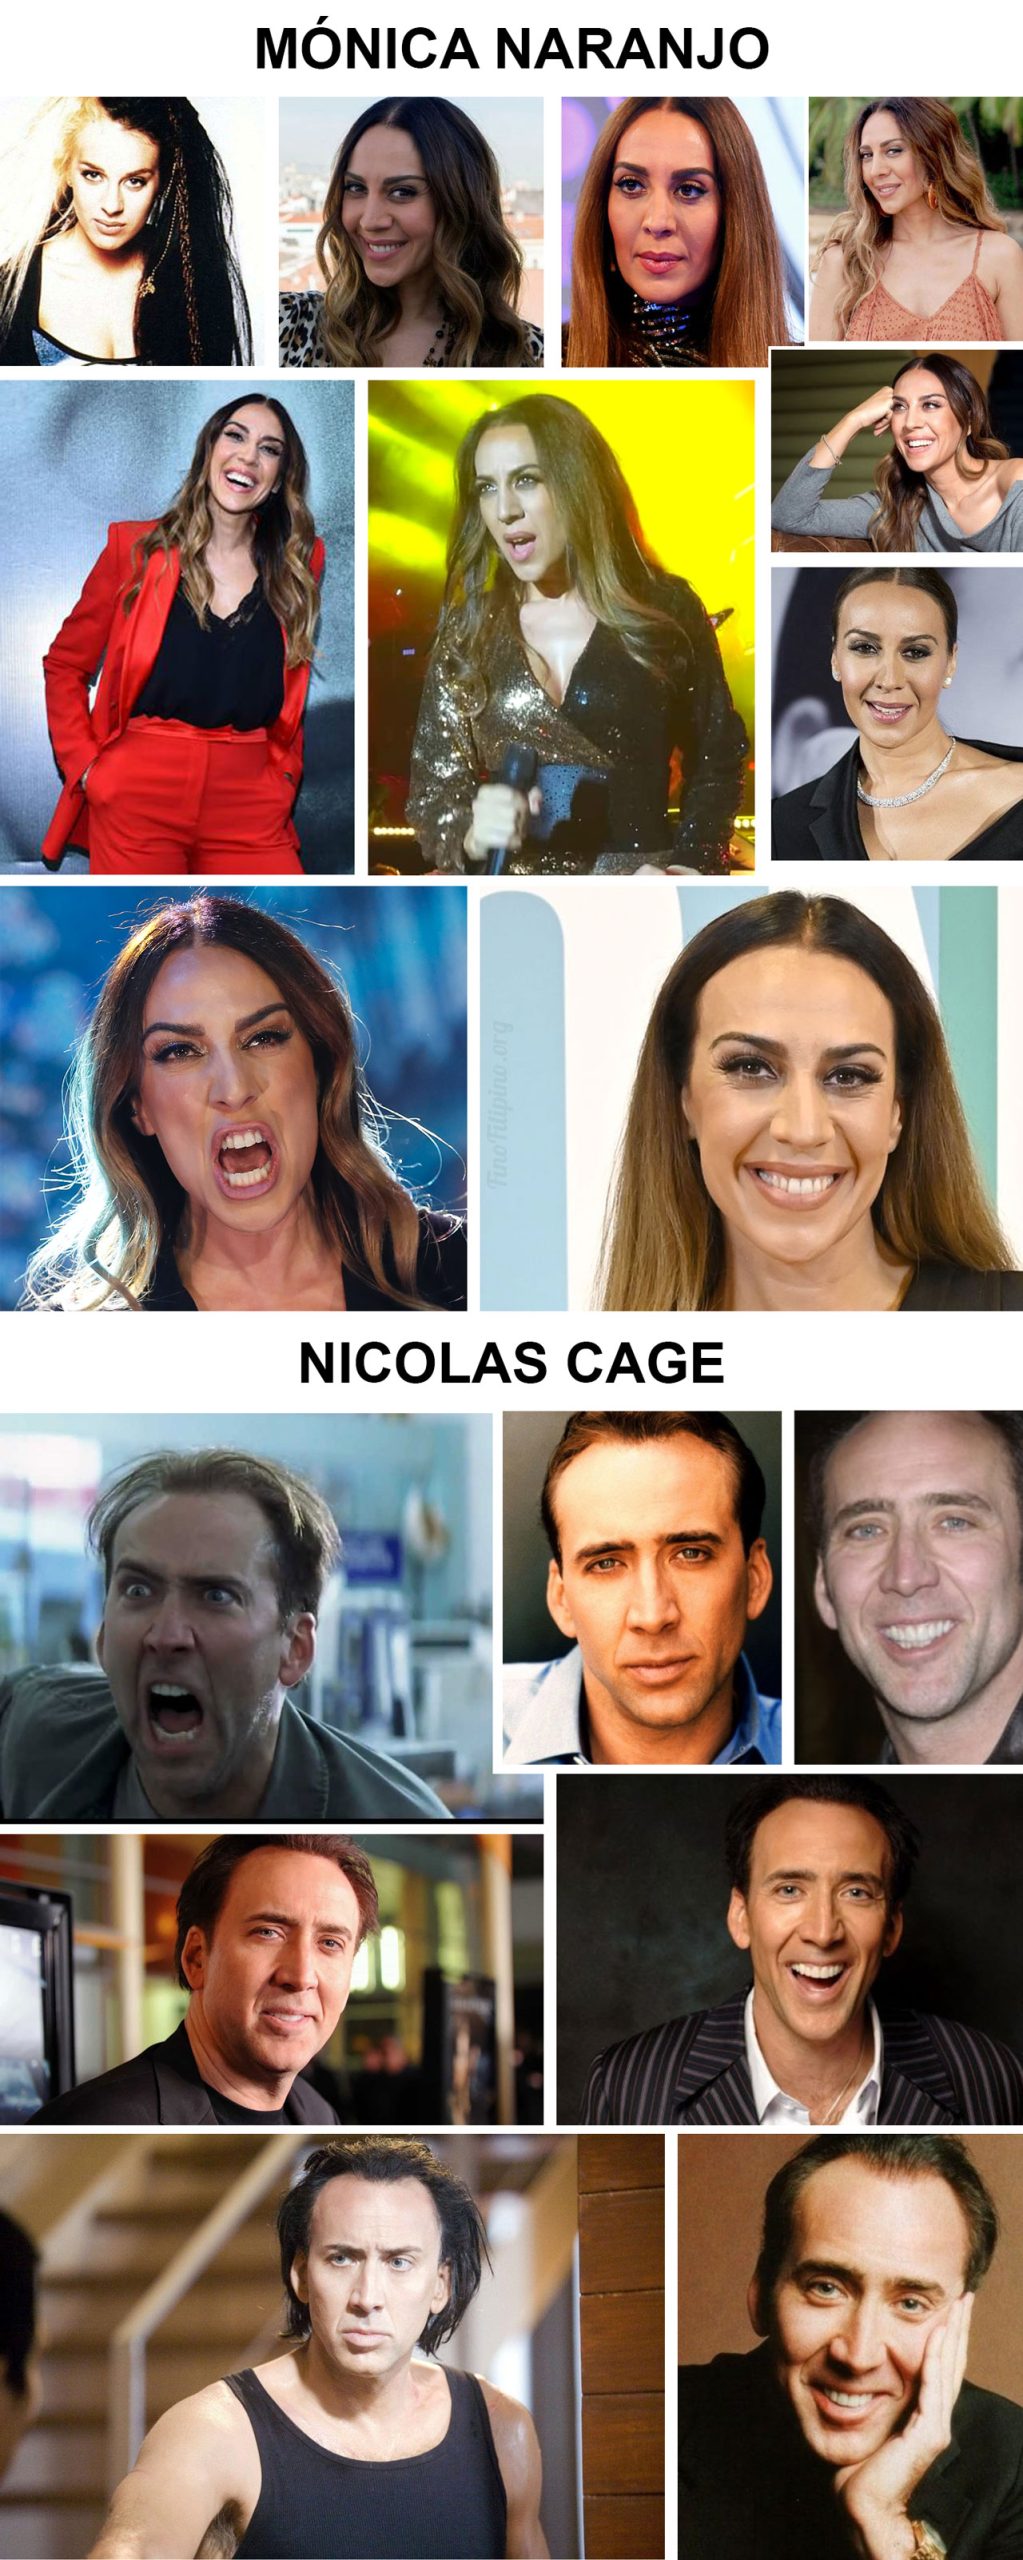 ¿Cuánto va a tardar en confesar Mónica Naranjo que es Nicolas Cage con peluca?